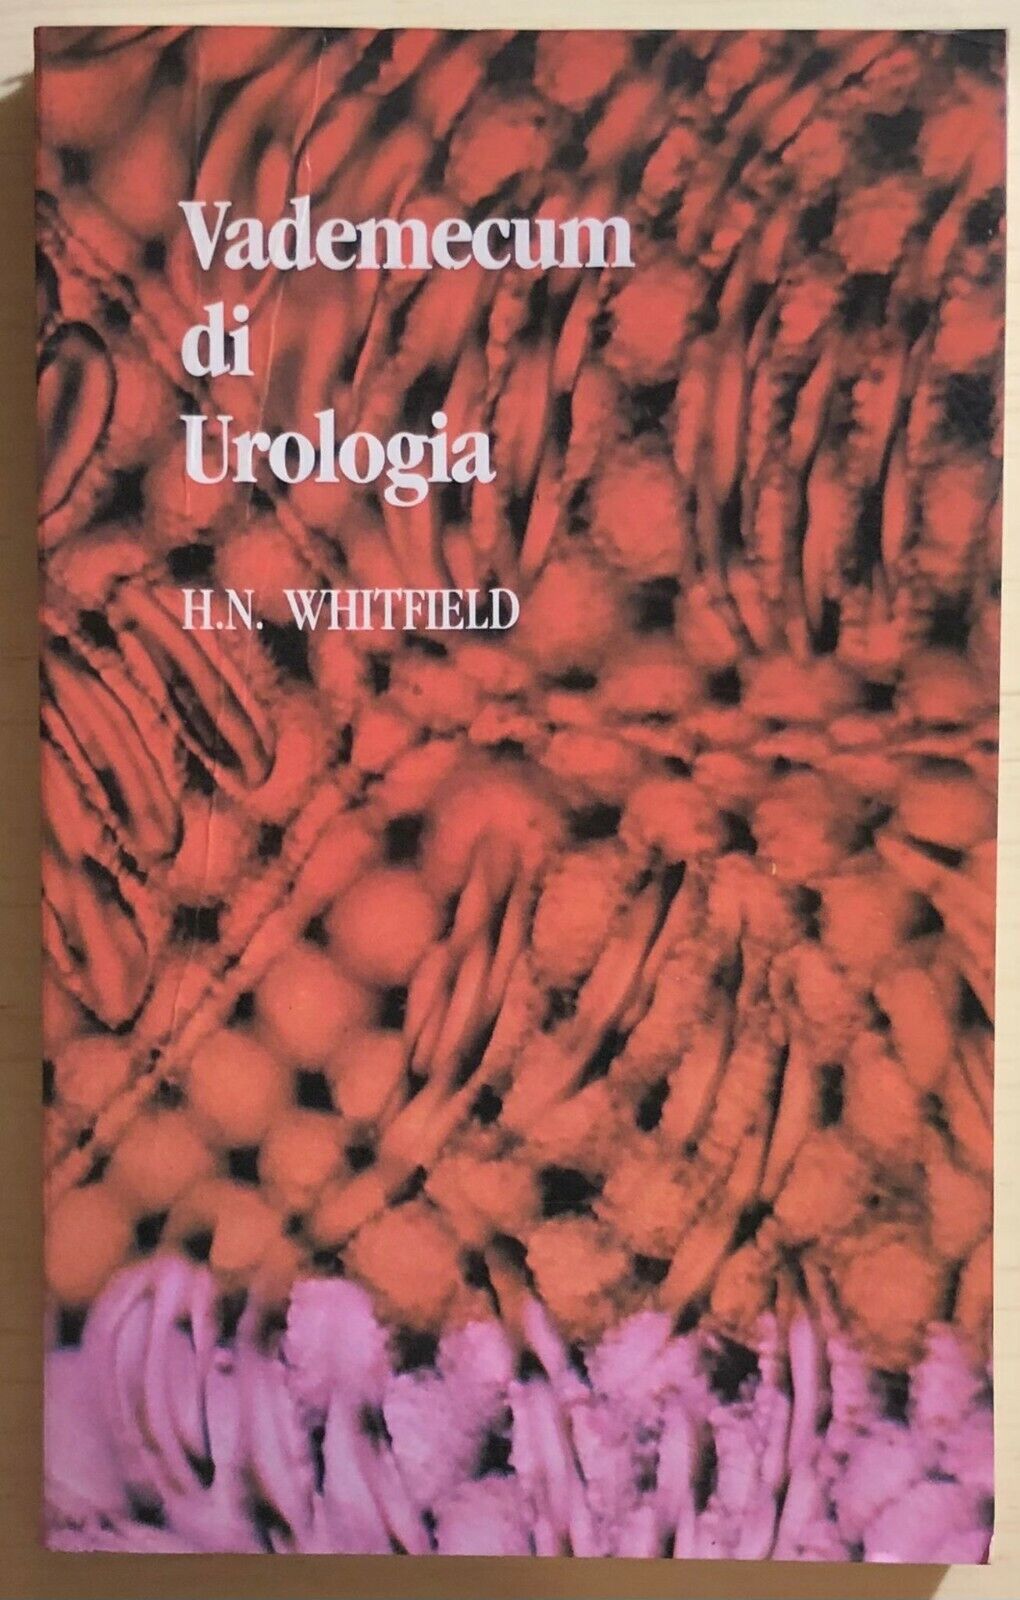 Vademecum di Urologia di H.N. Whitfield, 1986, Martinucci